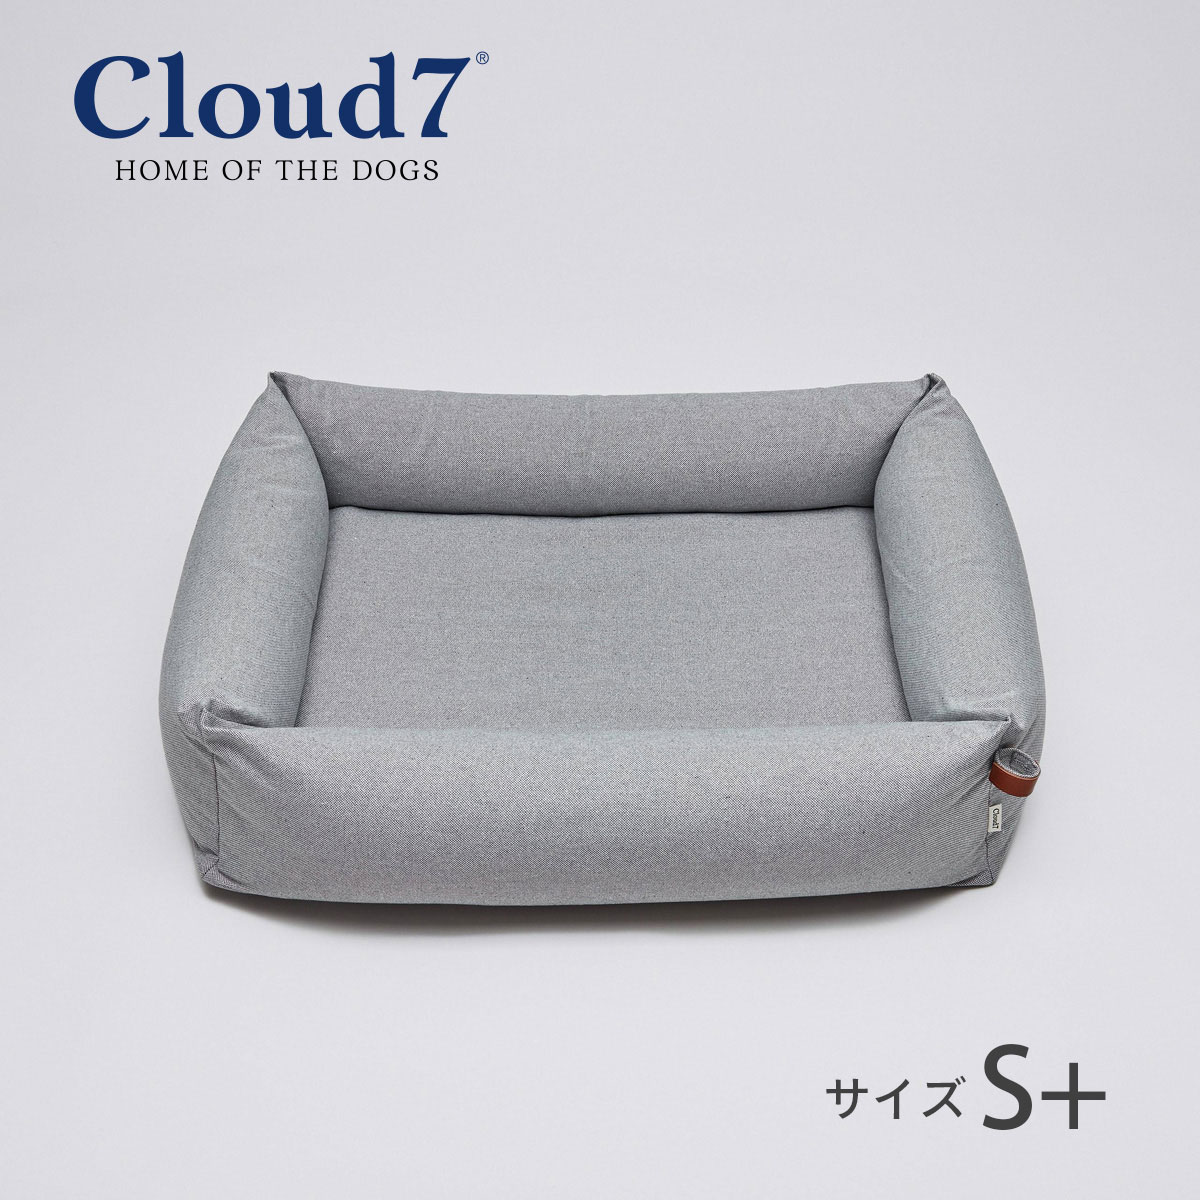 高品質の犬用ベッド ペットベッド おしゃれ Cloud7 売買 クラウド7 スリーピー デラックス 海外直輸入 ペット ツイードグレー S+サイズ インテリア